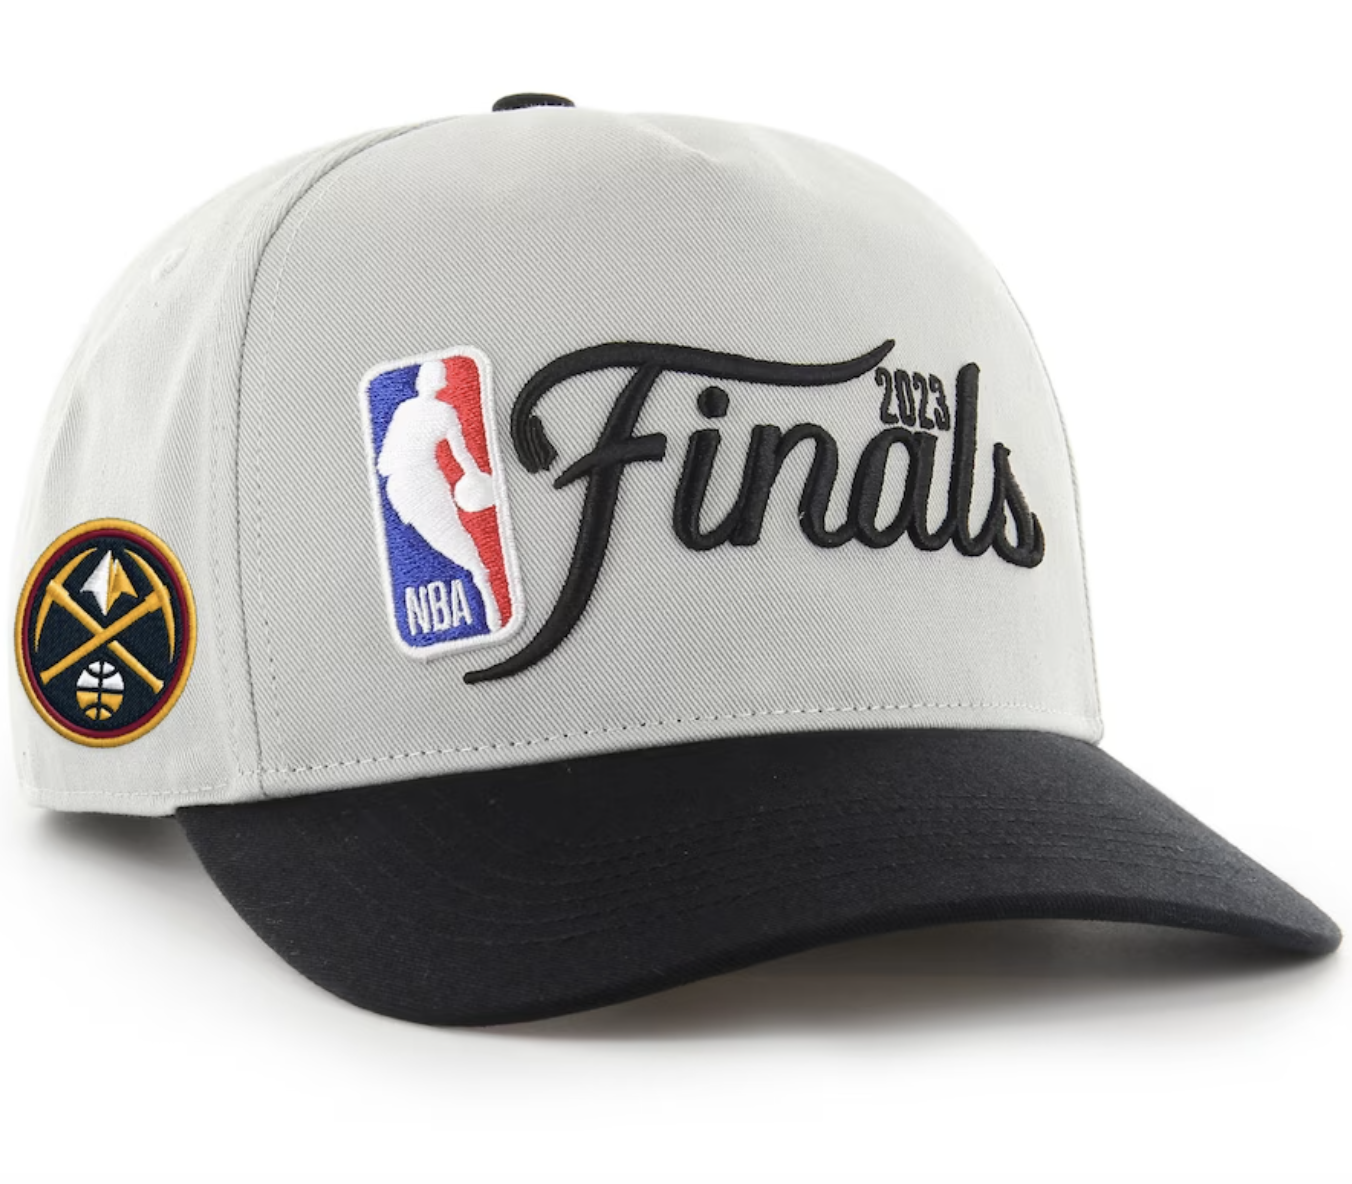 Los Angeles Lakers Hats, Western Snapback, Lakers Locker Room Caps